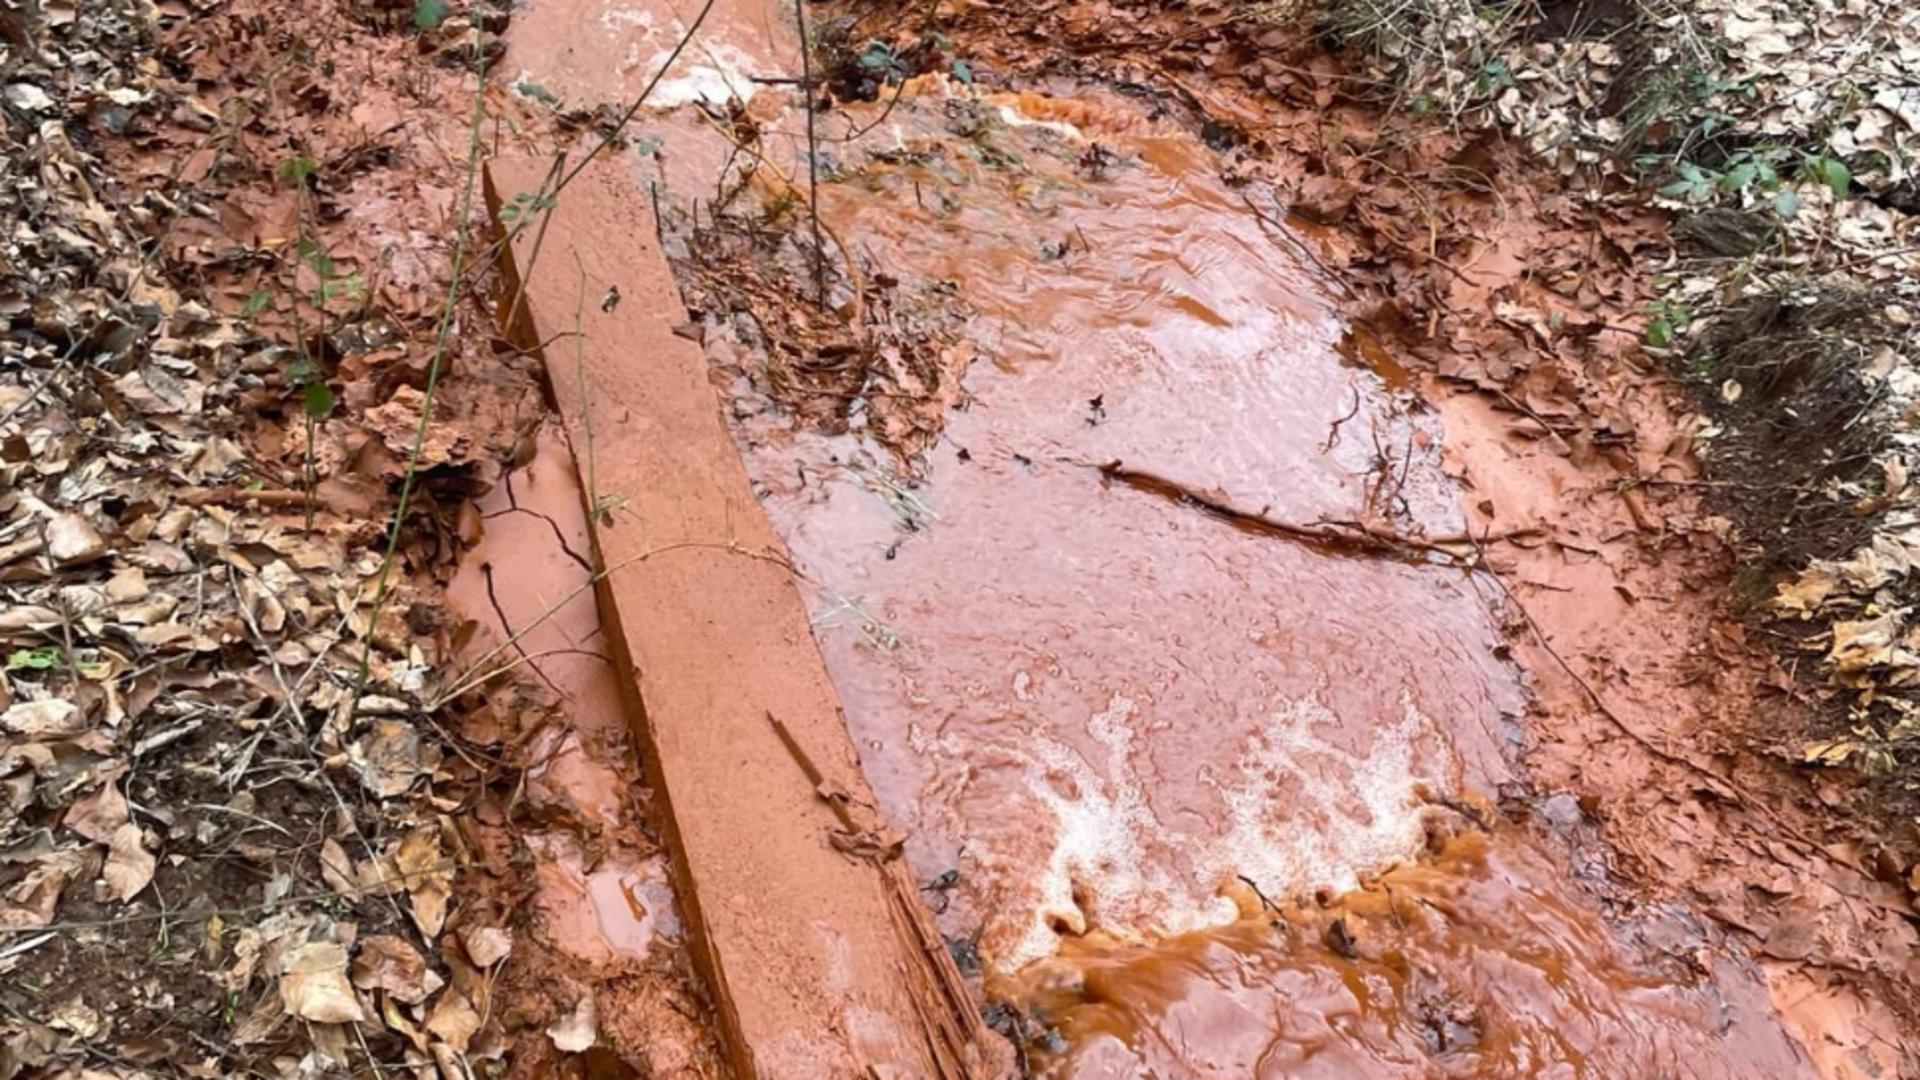 Dezastrul ecologic din Bihor se extinde: Poluarea provenită după prăbușirea unei galerii de mină are 17 km